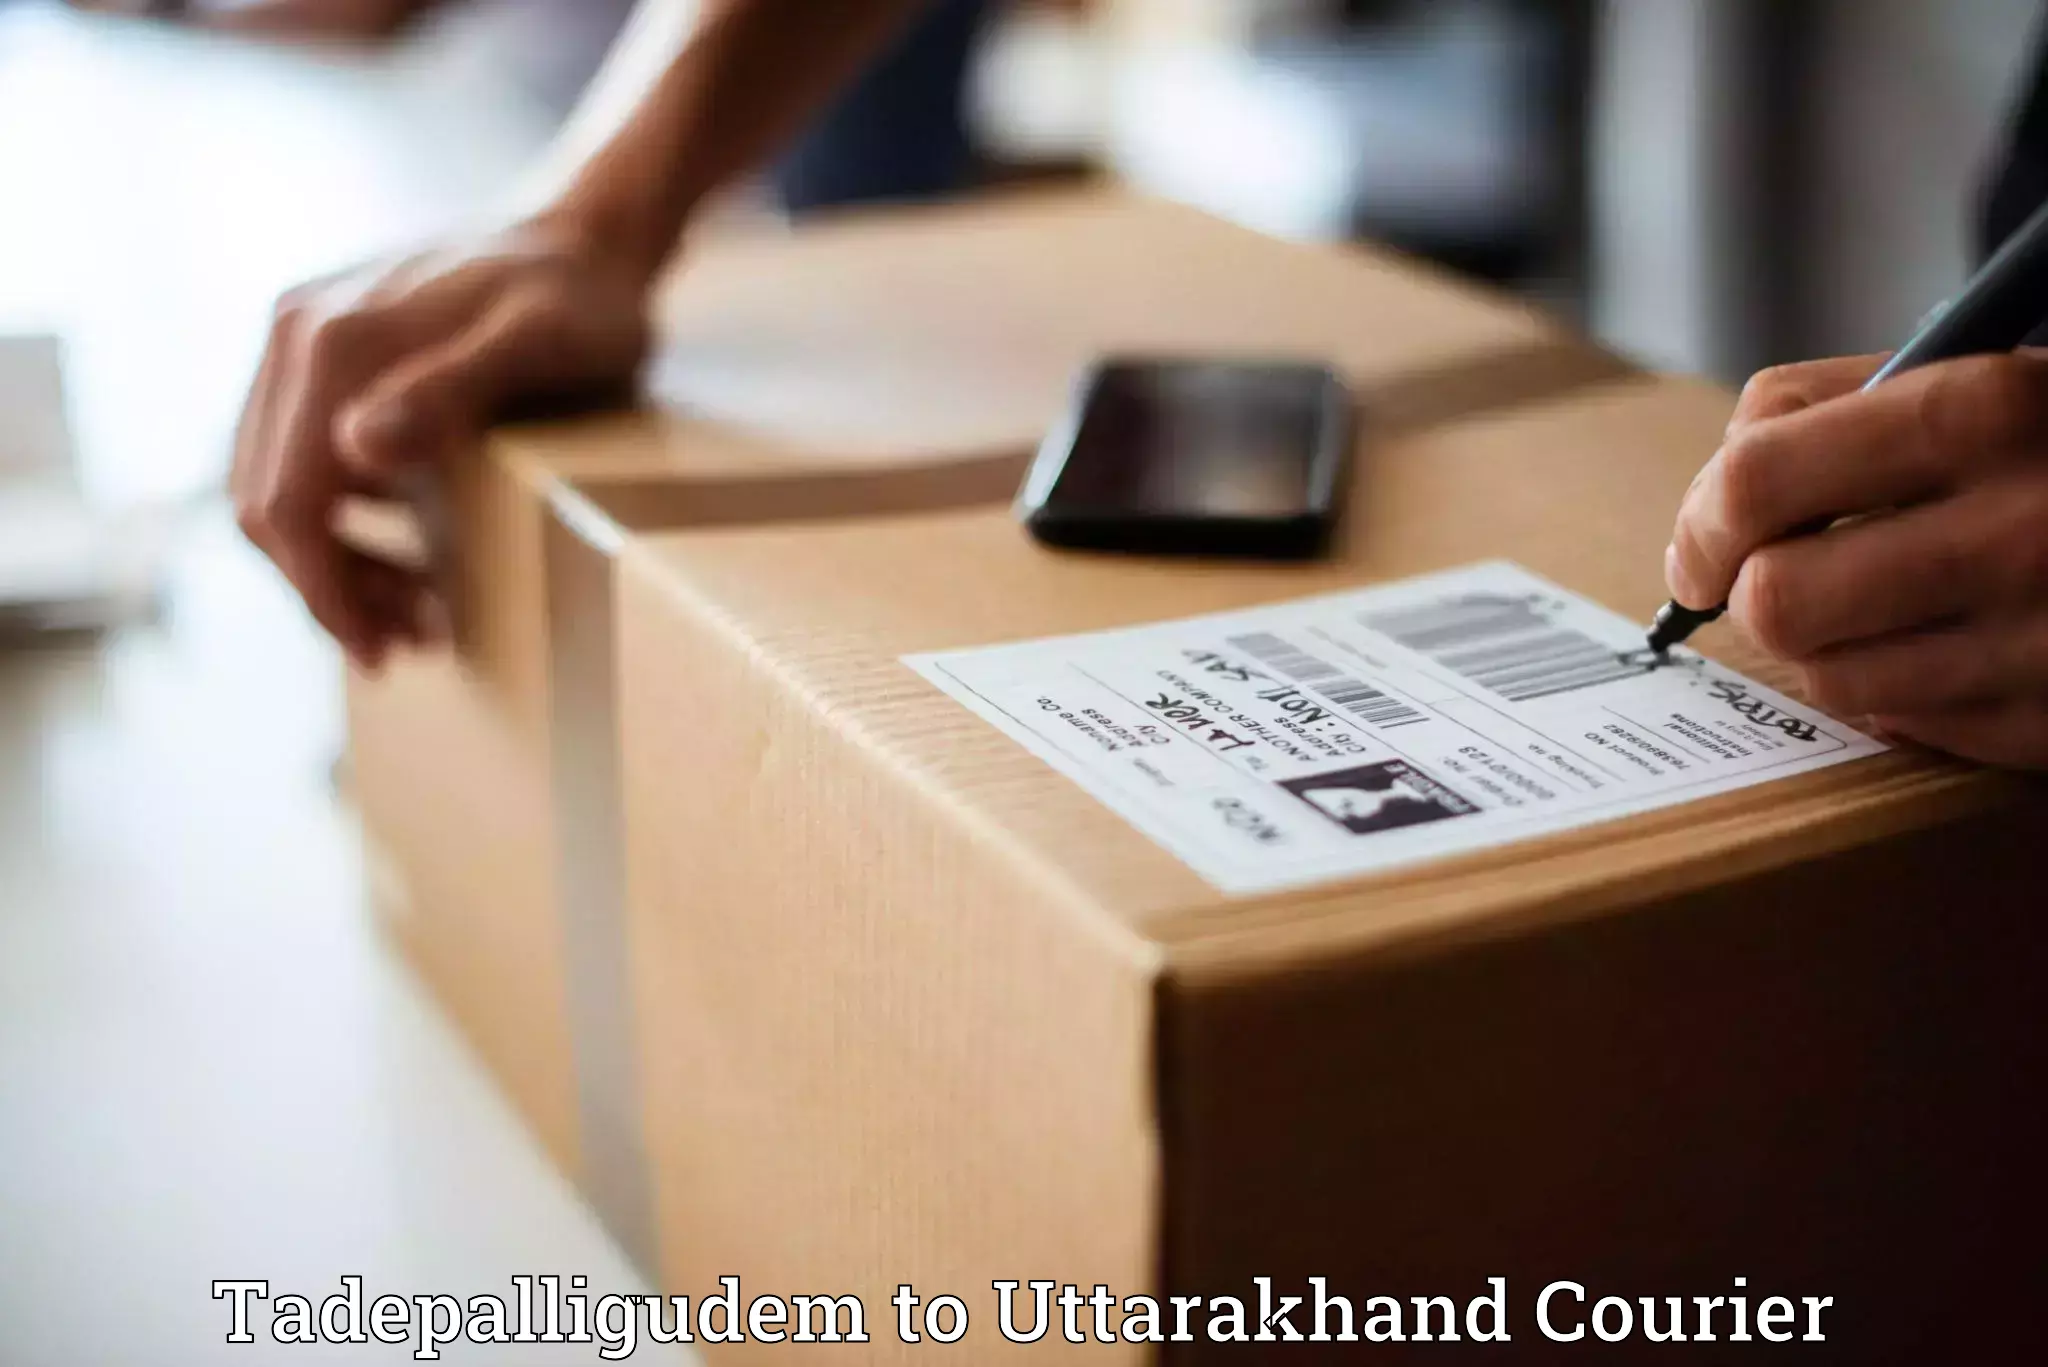 Bulk courier orders Tadepalligudem to Uttarakhand